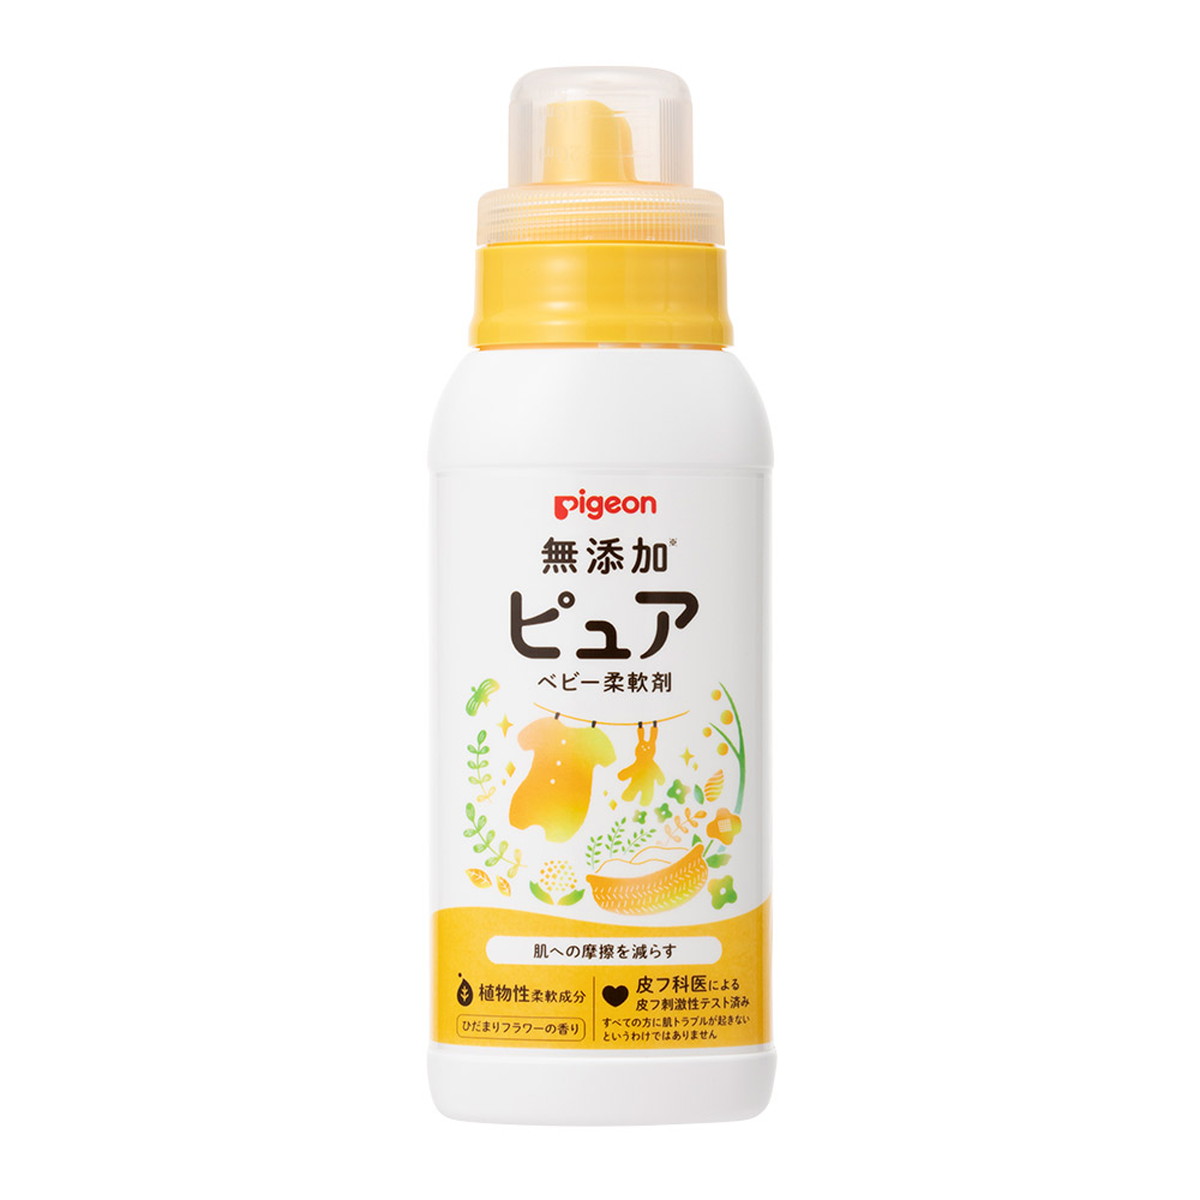 商品名：無添加ピュア ベビー柔軟剤600mlボトル内容量：1個ブランド：ピジョン原産国：日本ふわふわで気持ちよさが長続き、やさしく香るベビー用柔軟剤。天然植物由来の柔軟成分使用。水通しから安心して使えます。静電気防止効果でほこりや花粉などの付着を防ぎます。汗などのいやなニオイを防ぎ、防臭効果が持続します。やわらか仕上げで汗や水の吸収を妨げません。無着色。ひだまりフラワーの香り。JANコード：4902508121088広告文責：アットライフ株式会社TEL 050-3196-1510※商品パッケージは変更の場合あり。メーカー欠品または完売の際、キャンセルをお願いすることがあります。ご了承ください。